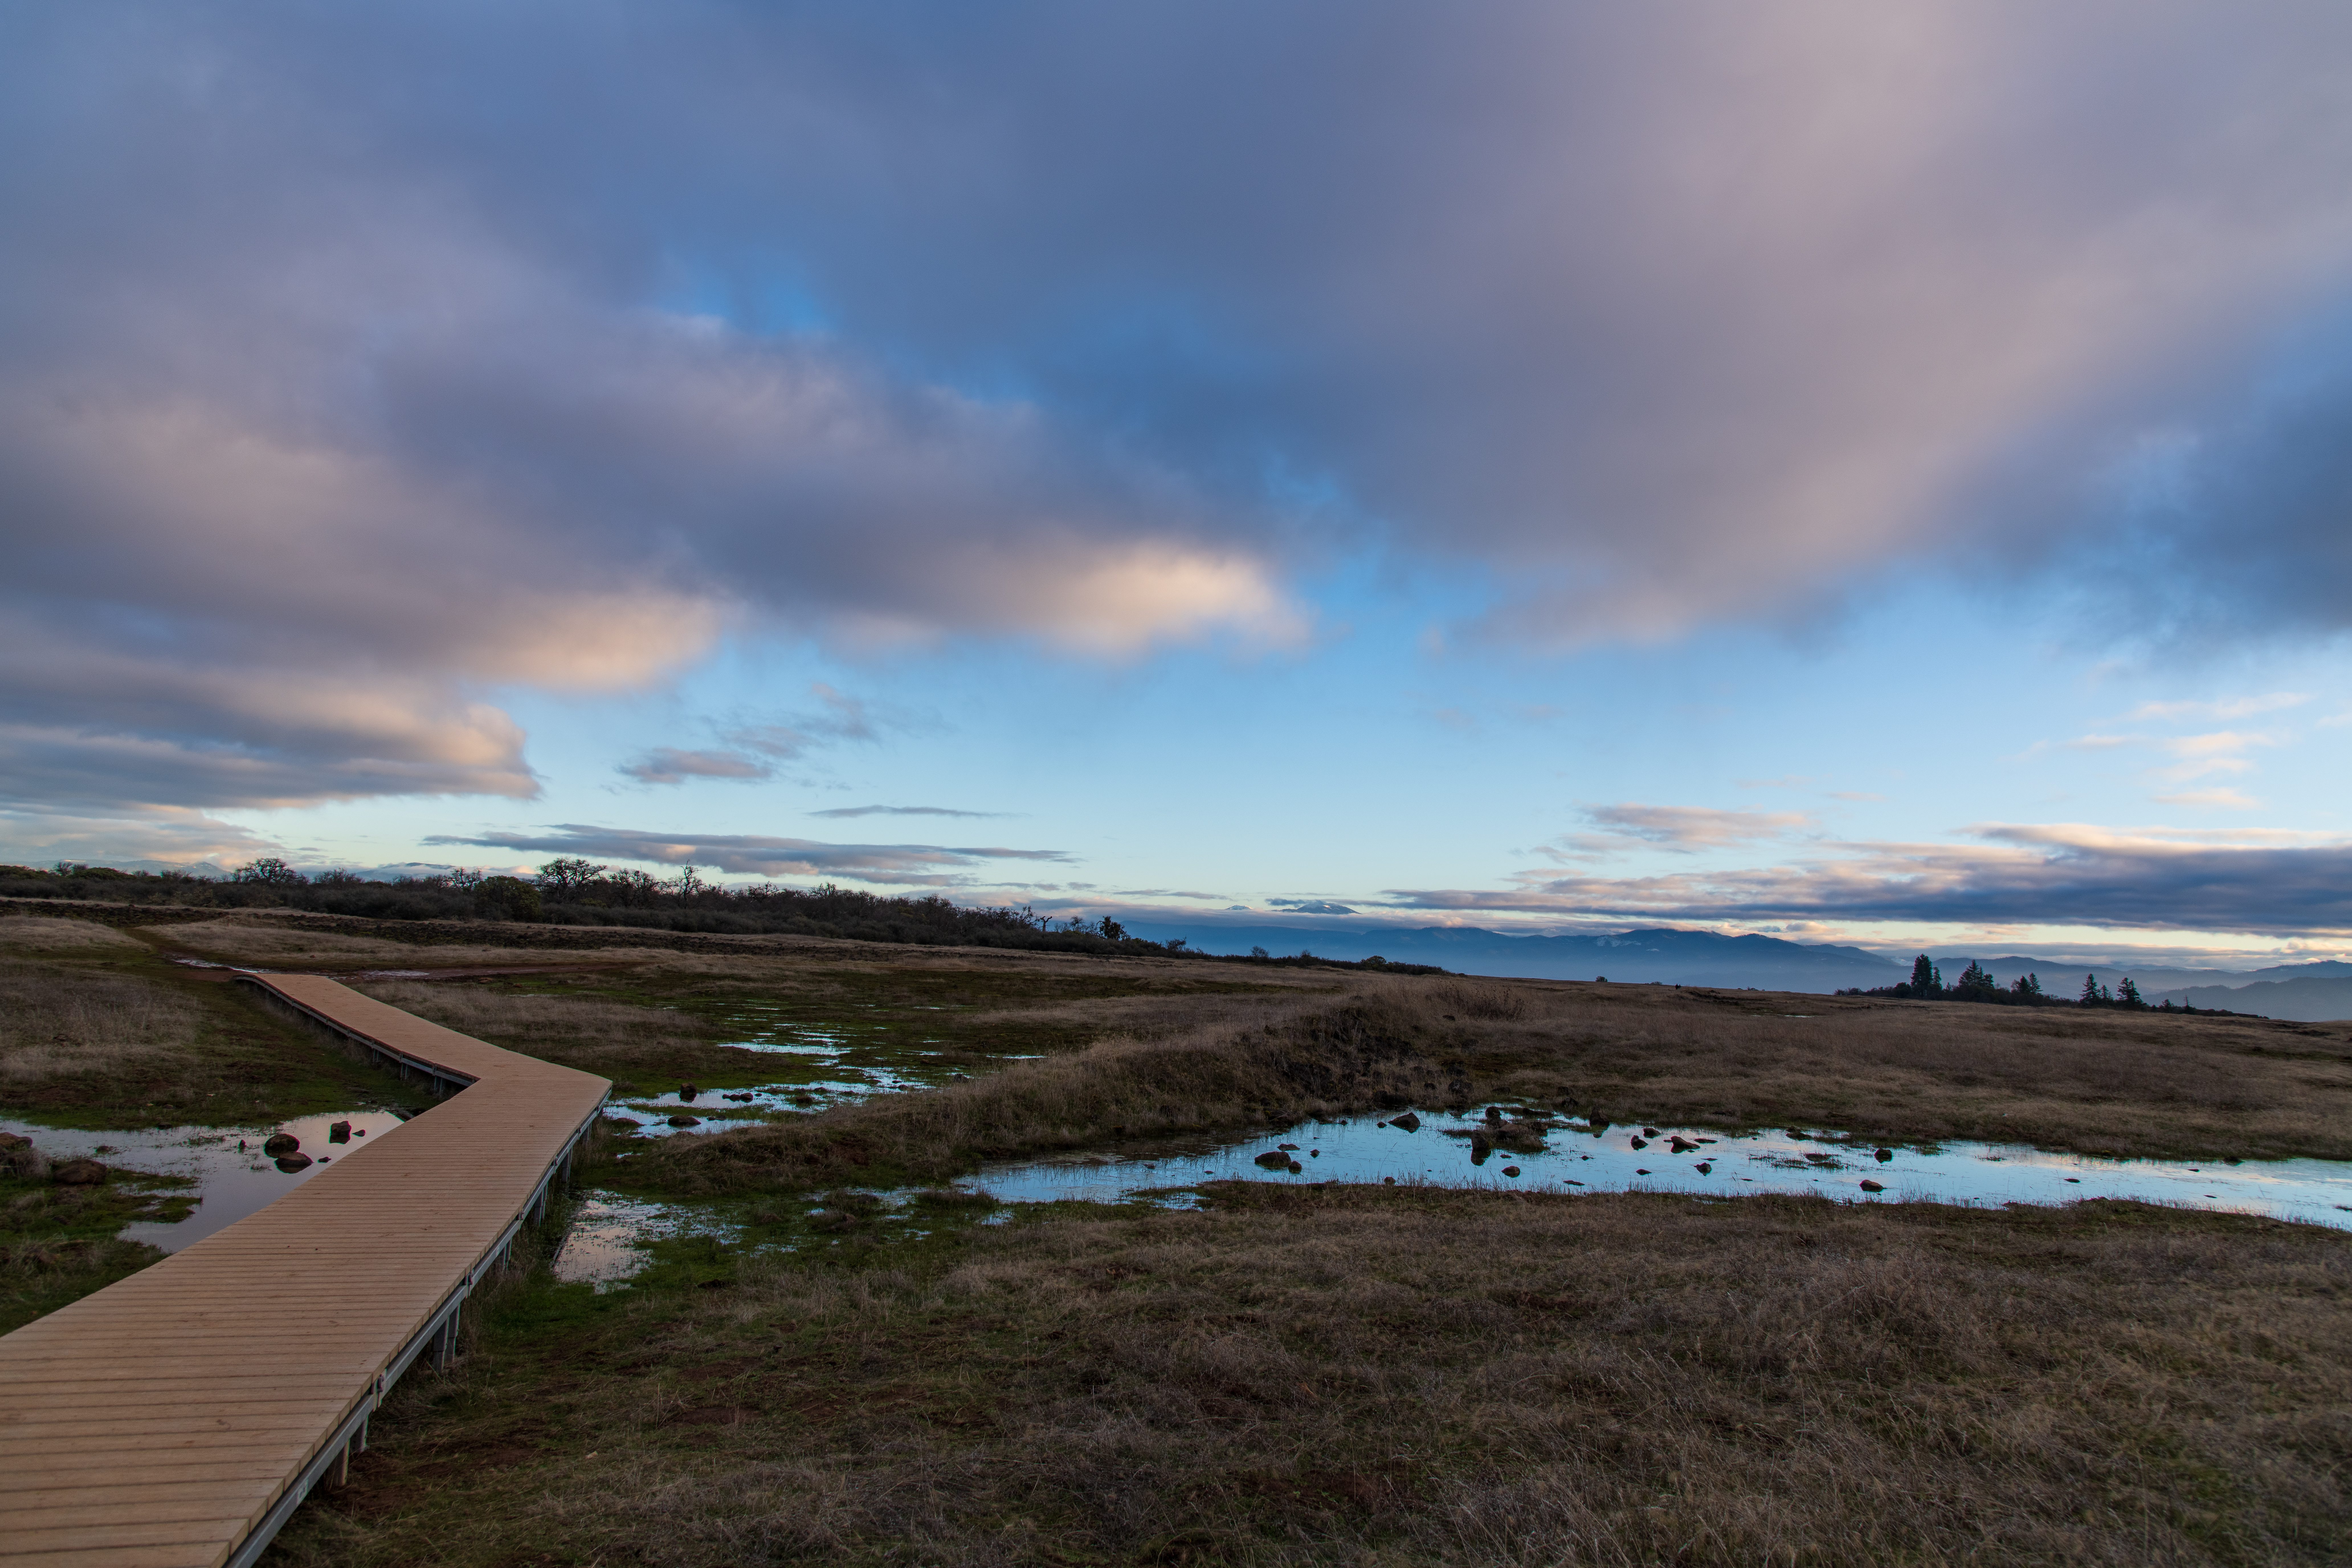 flickr/ Bureau of Land Management Oregon and Washington